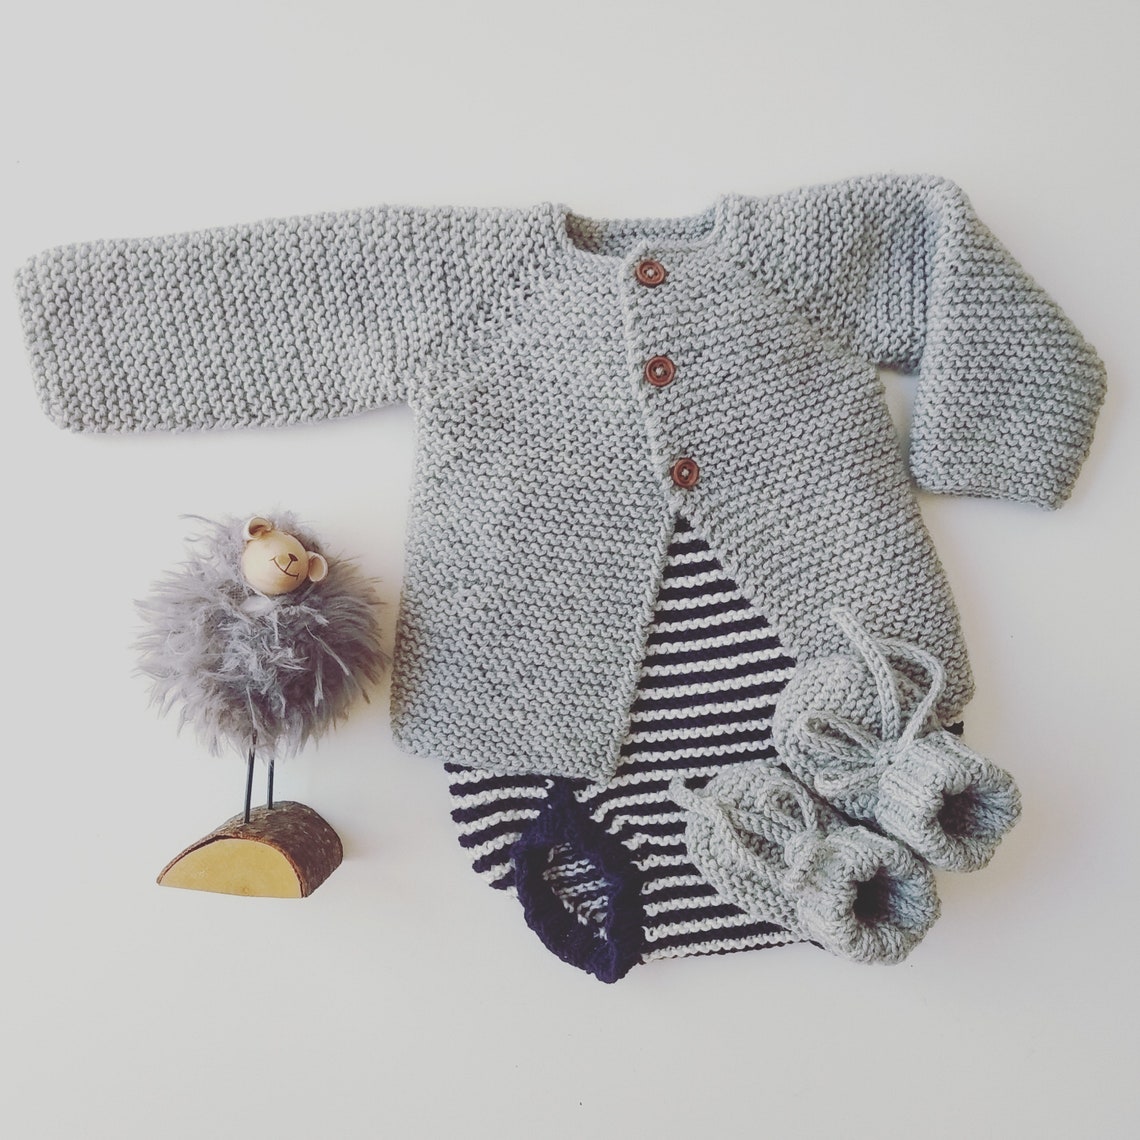 Cozy Knit Baby Cardigan Merino Knit Baby Cardigan Handknit - Etsy UK